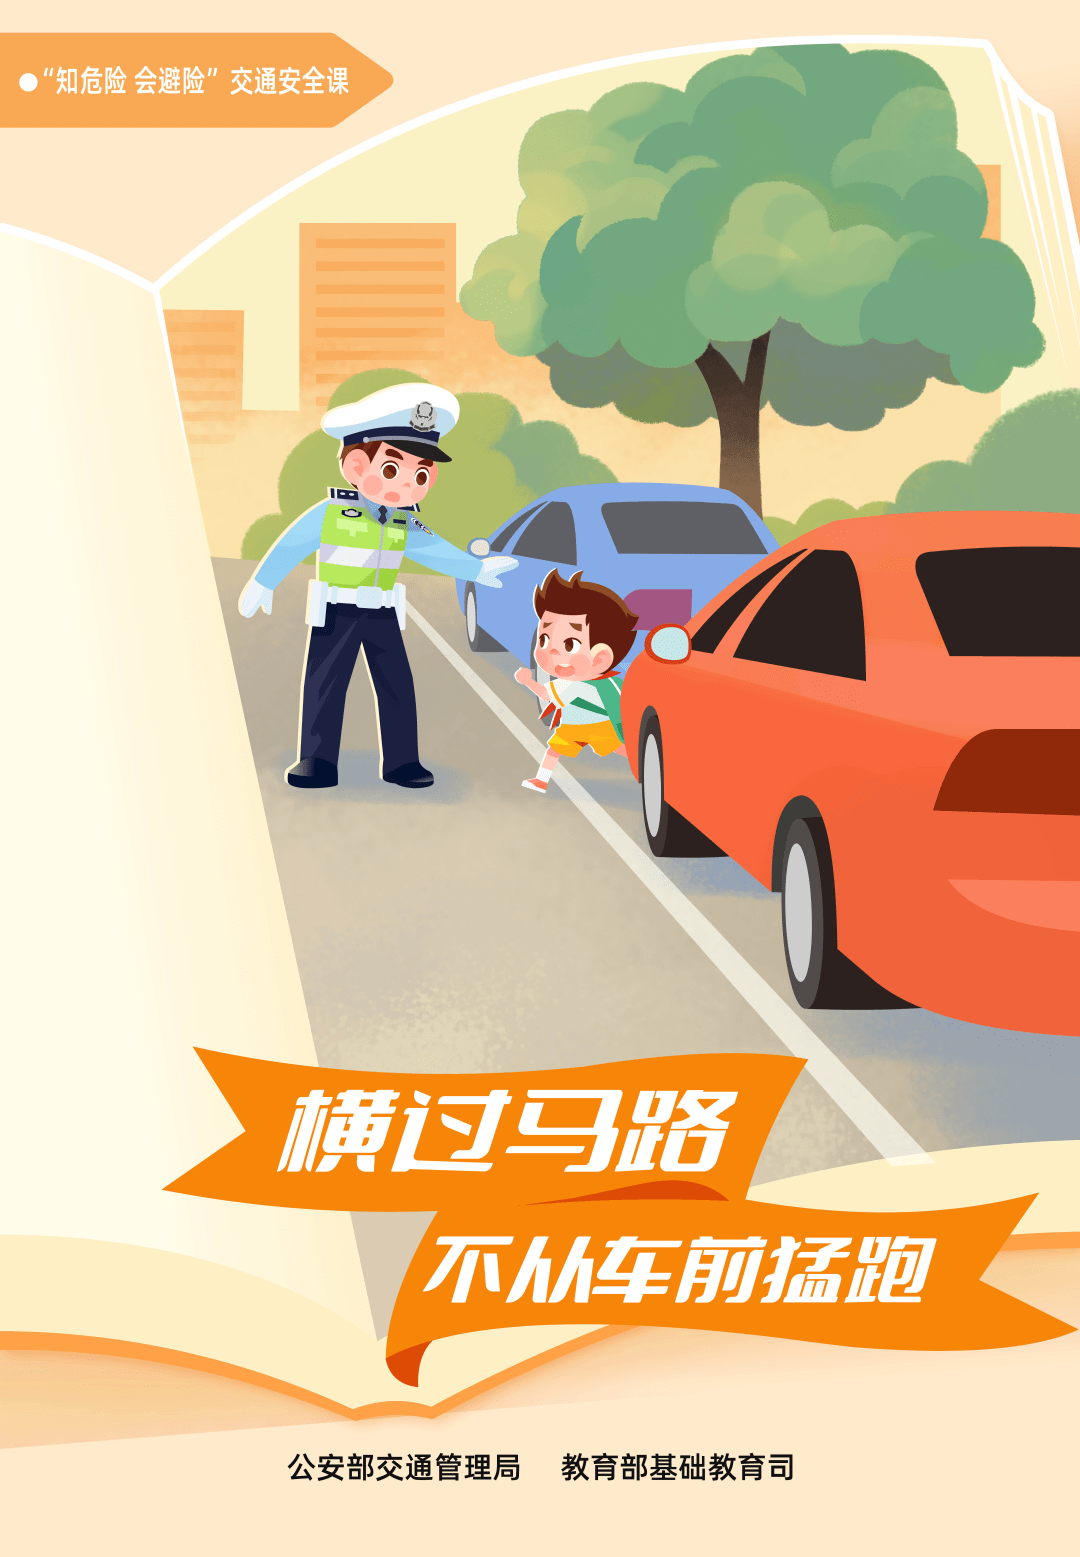 【开学第一课】安全上下学 交通安全系列海报来啦!